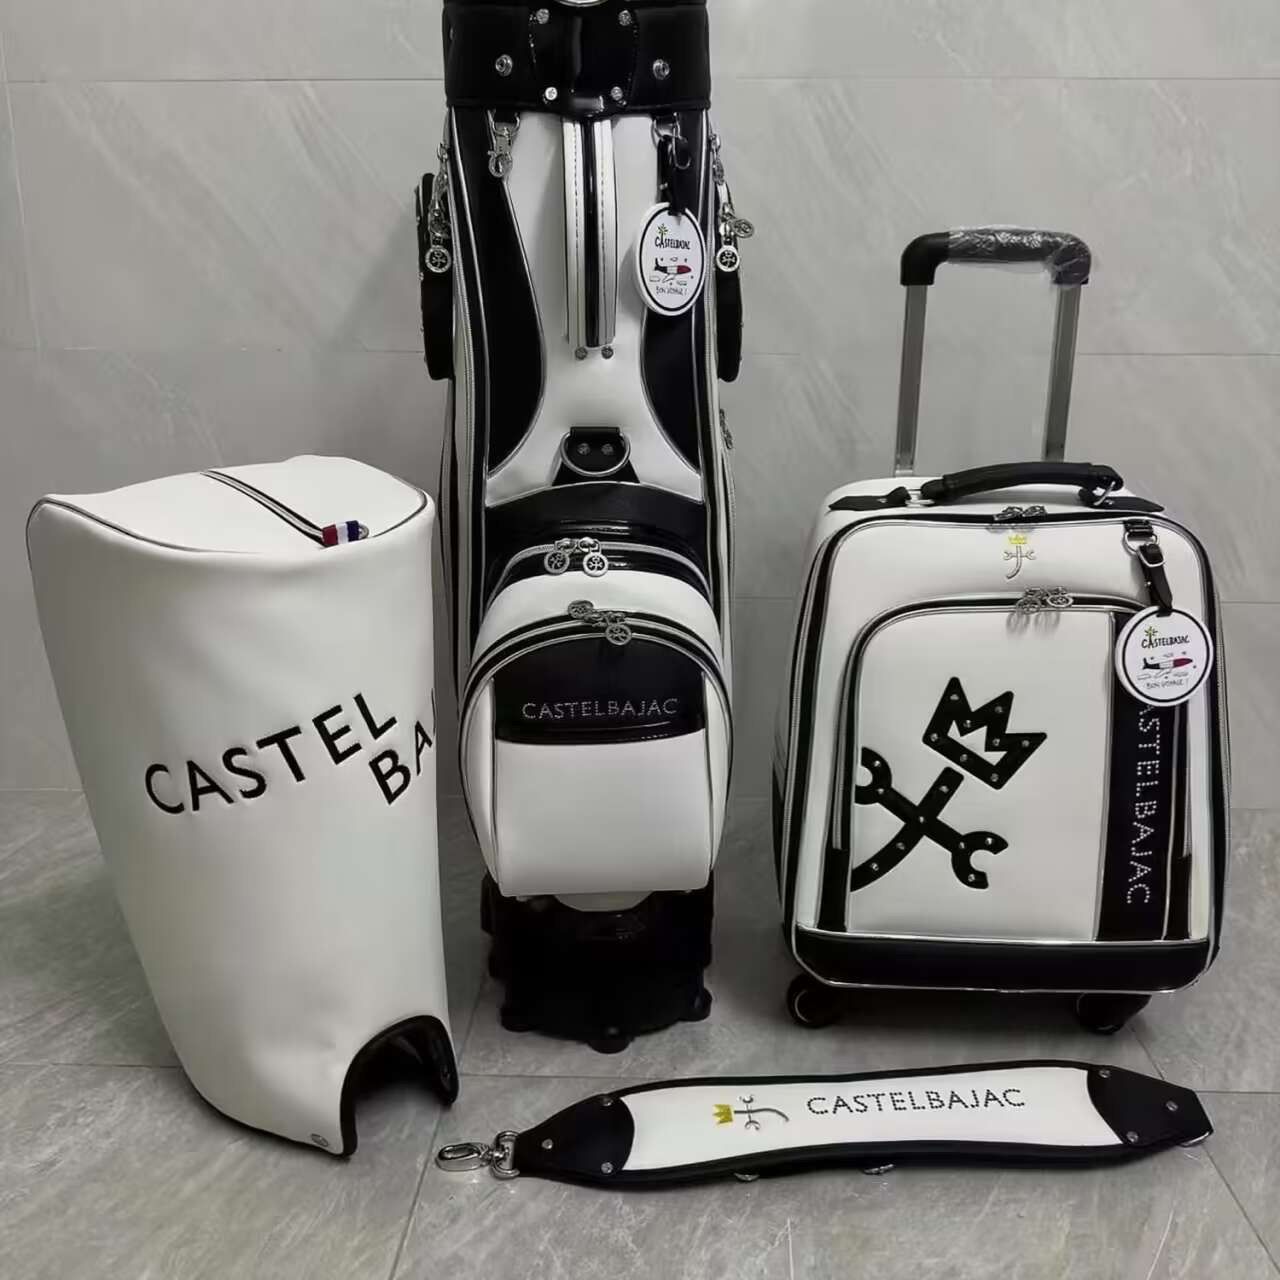 CASTELBALACカステル バジャック バッグ キャリーケースゴルフ スーツ